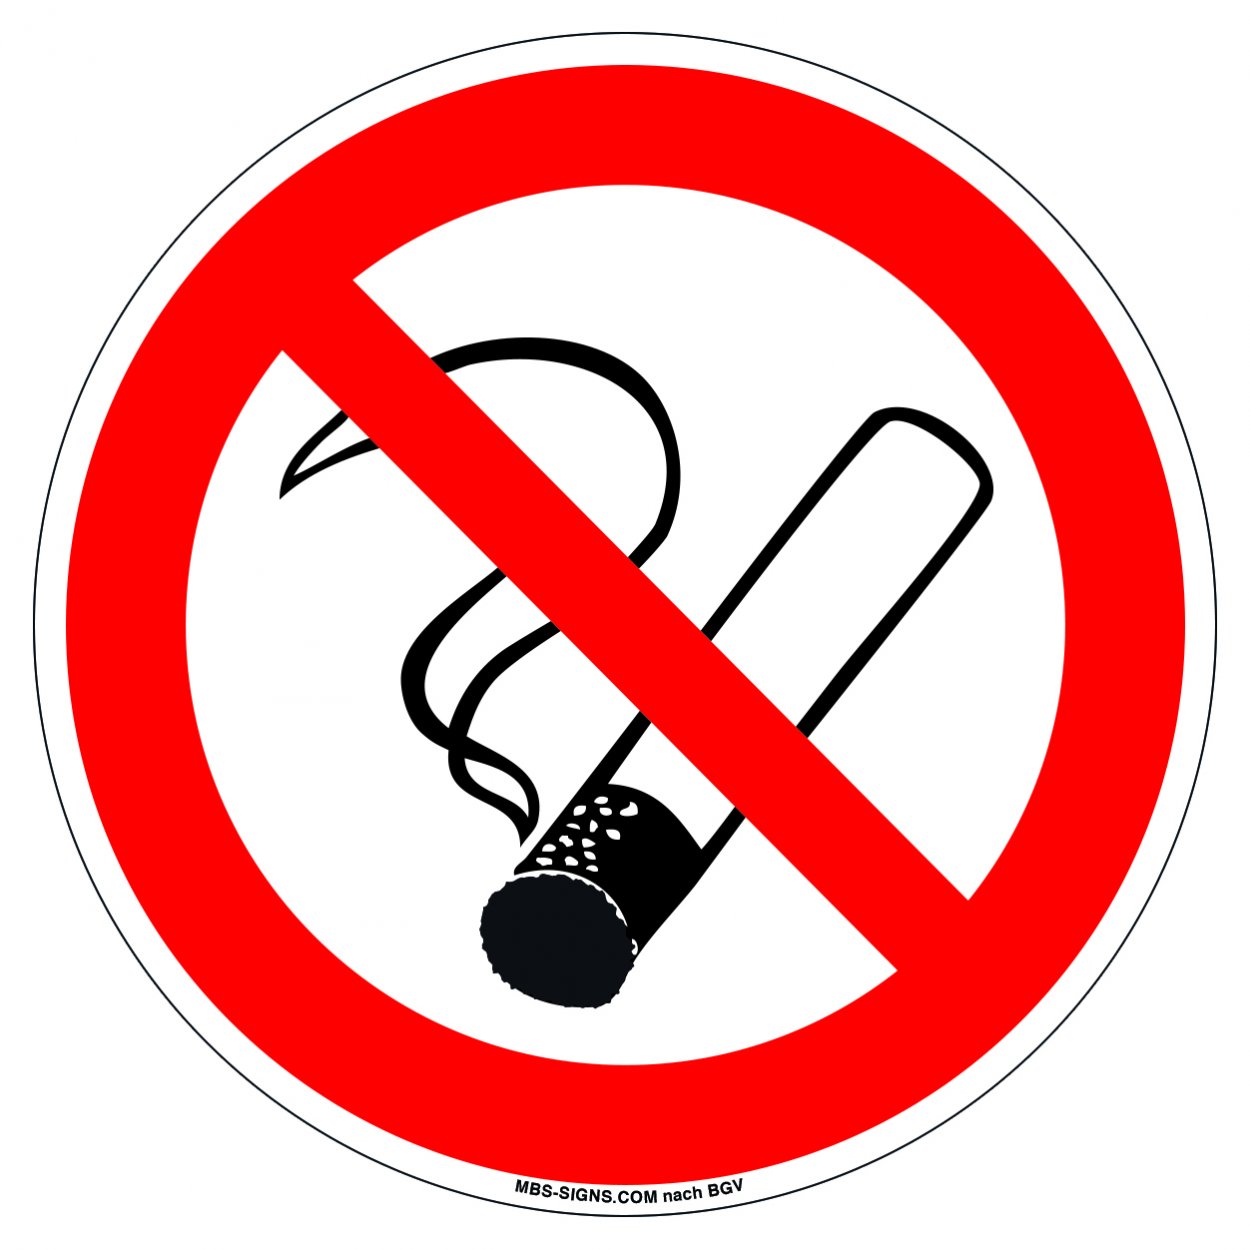 Aufkleber Rauchen verboten Ø 10cm Folie selbstklebend Nichtraucher Rauchverbot